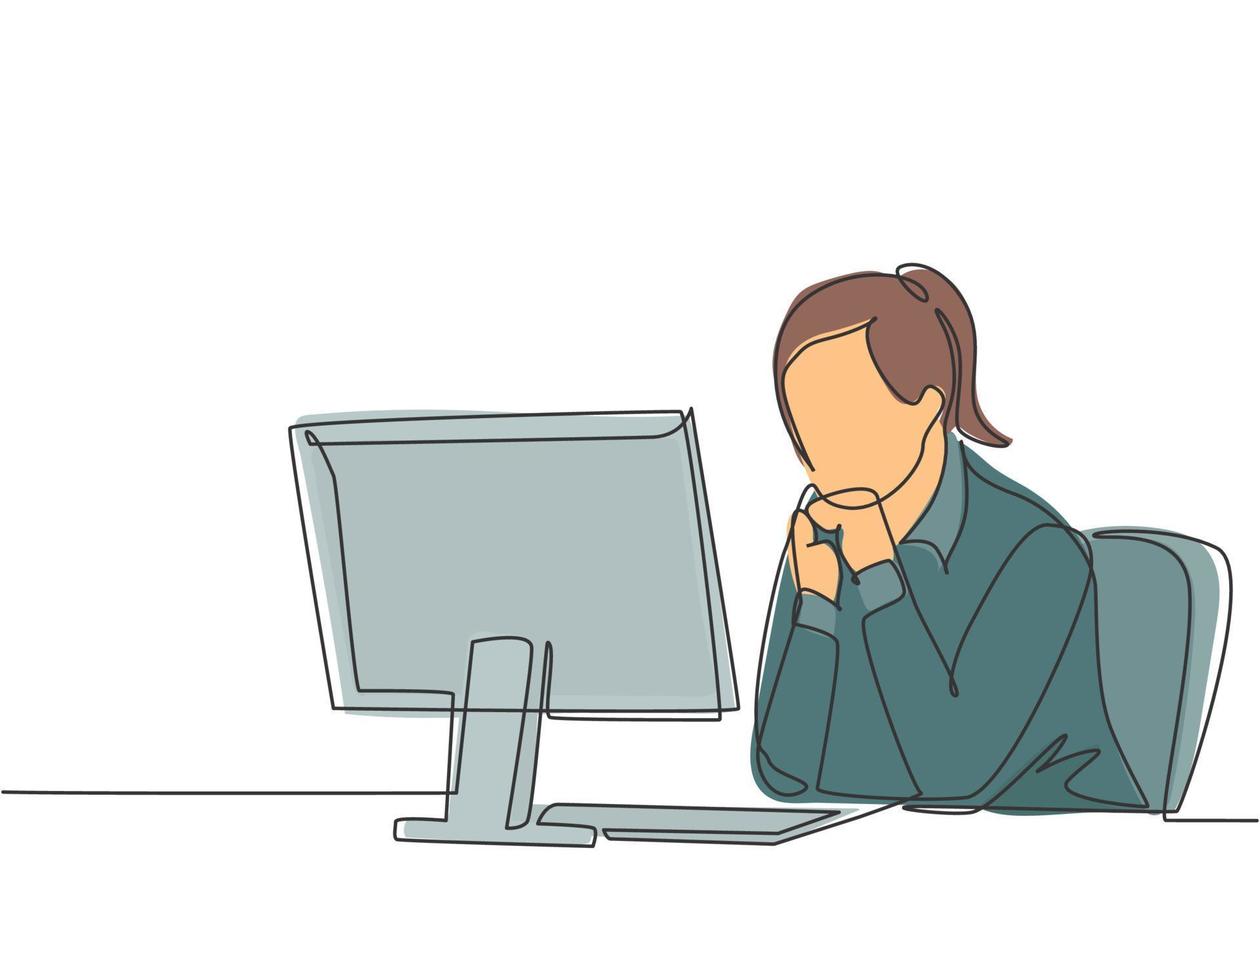 enda kontinuerlig ritning av ung kvinnlig chef som sitter lugnt framför en bärbar dator och tänker affärsstrategi på kontoret. affärsidé koncept en rad rita design vektor illustration